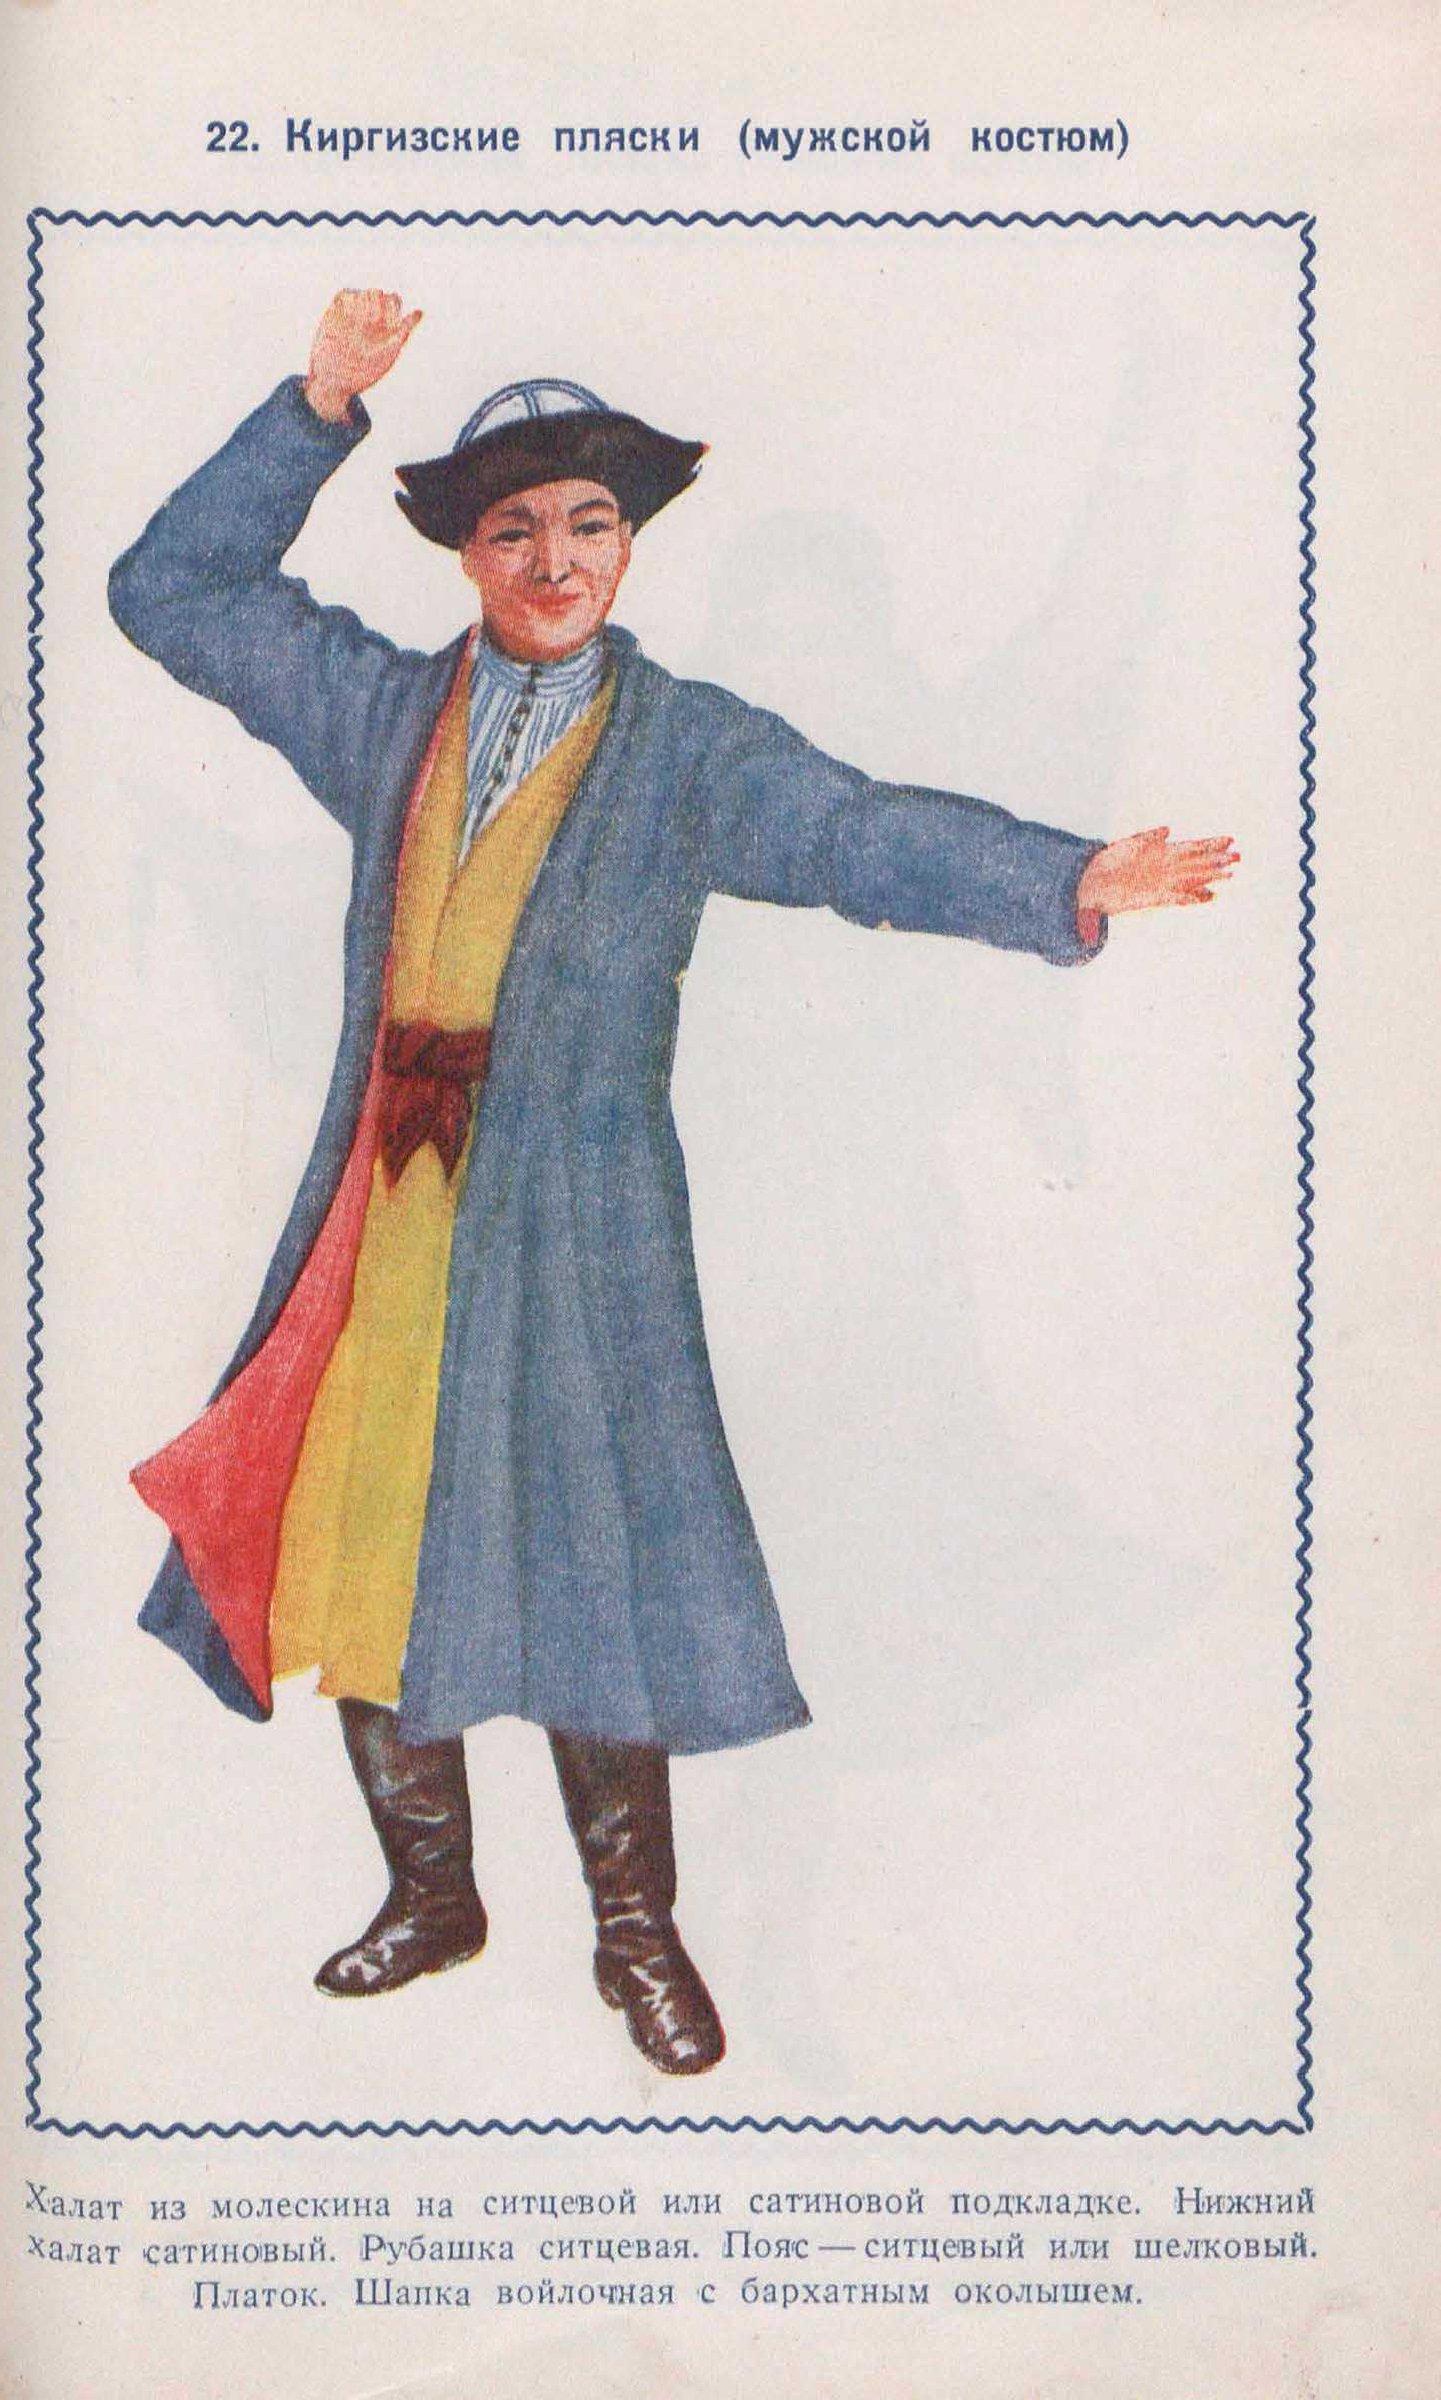 Киргизские пляски (мужской костюм)